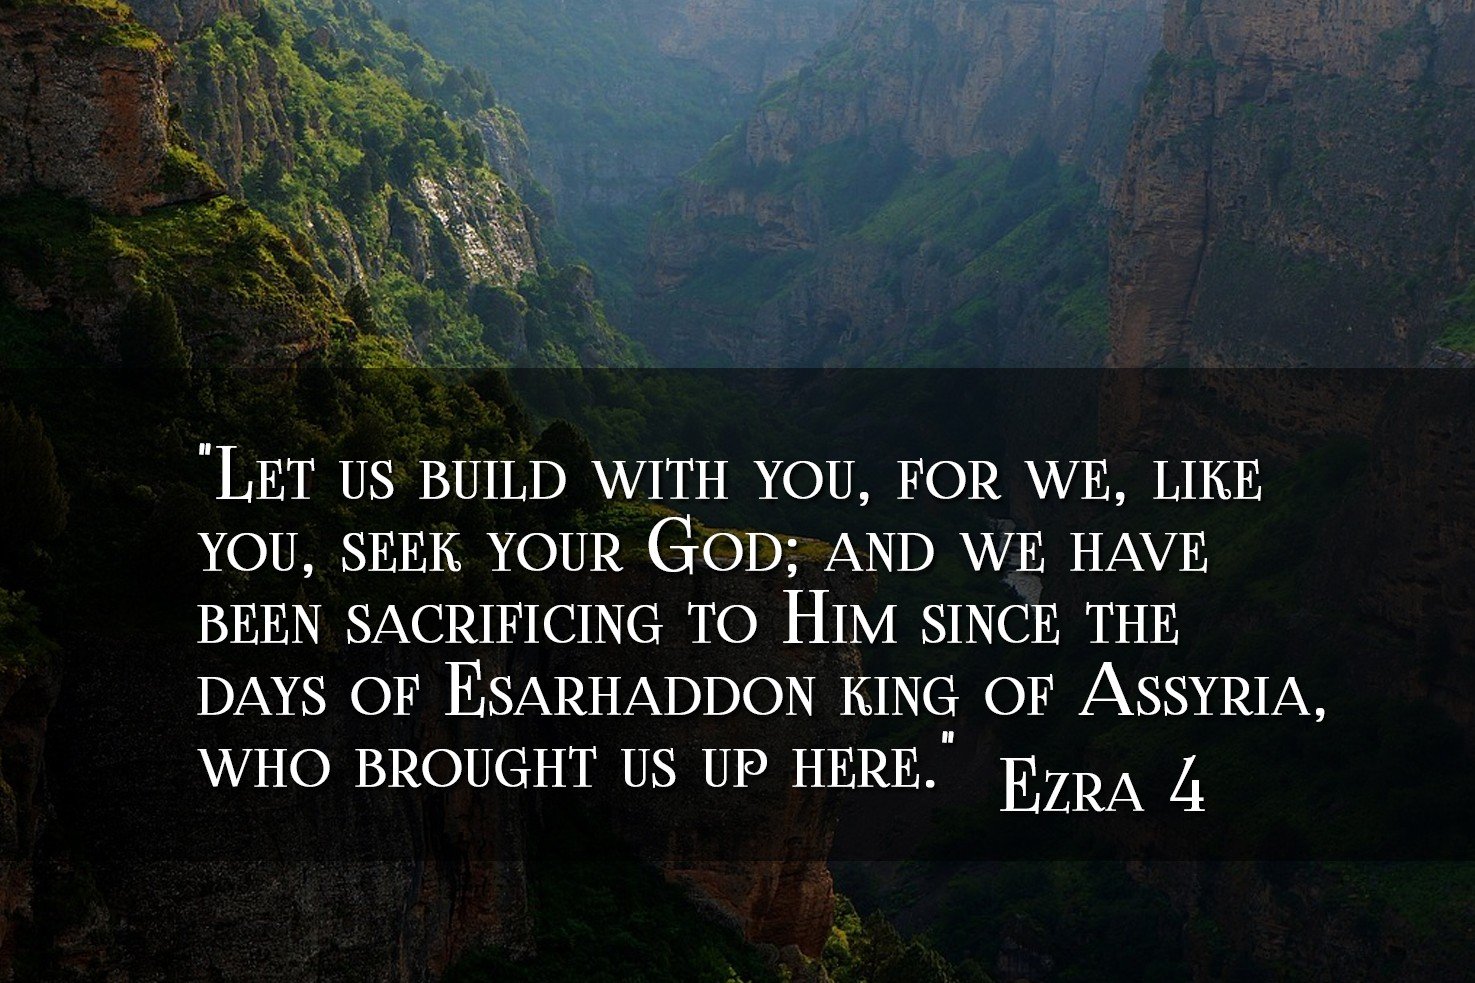 Ezra 4